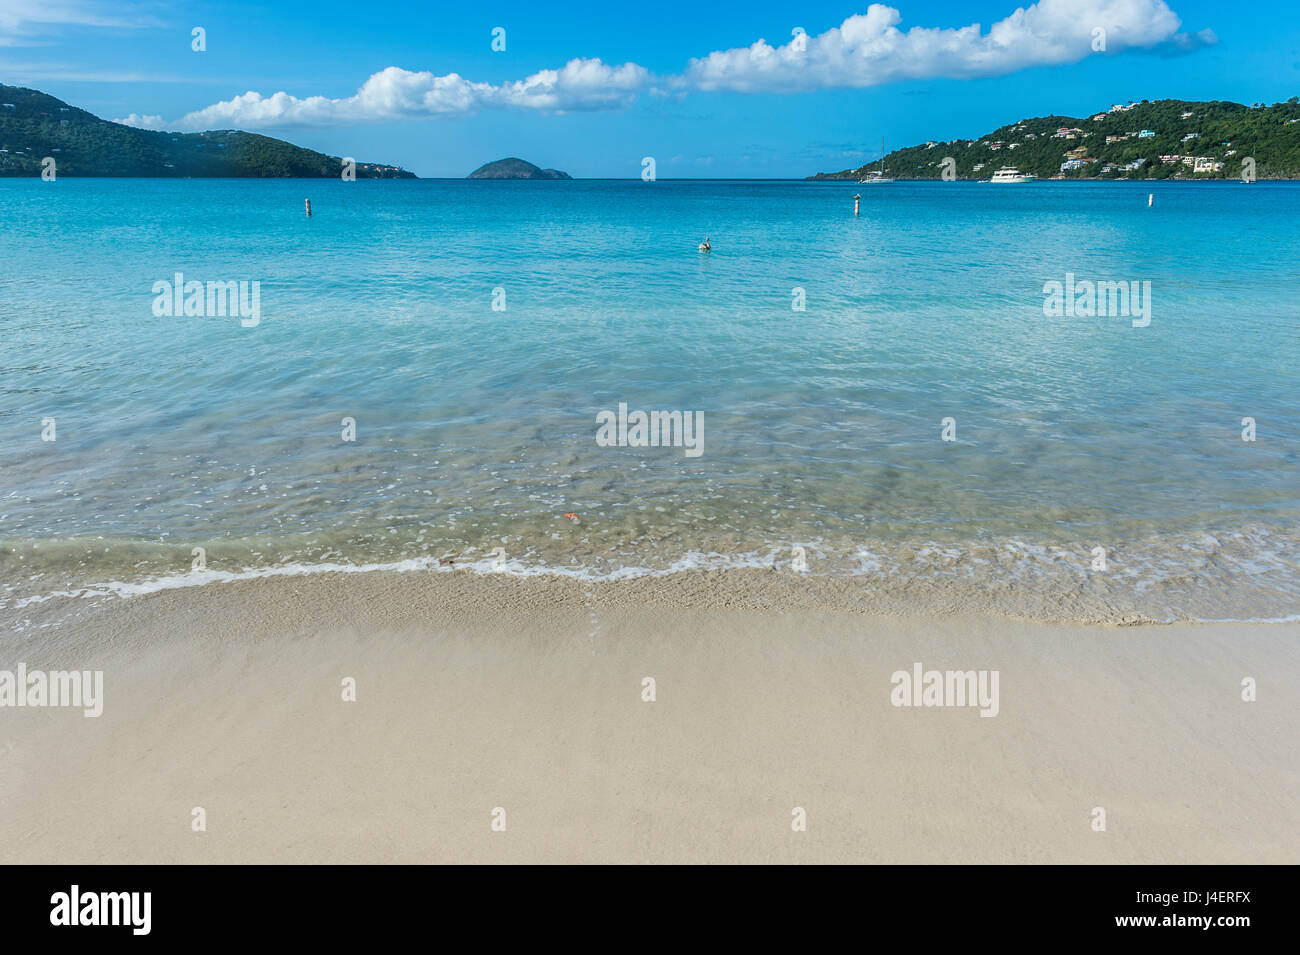 Magens Bay Beach, St Thomas, îles Vierges britanniques, Antilles, Caraïbes, Amérique Centrale Banque D'Images